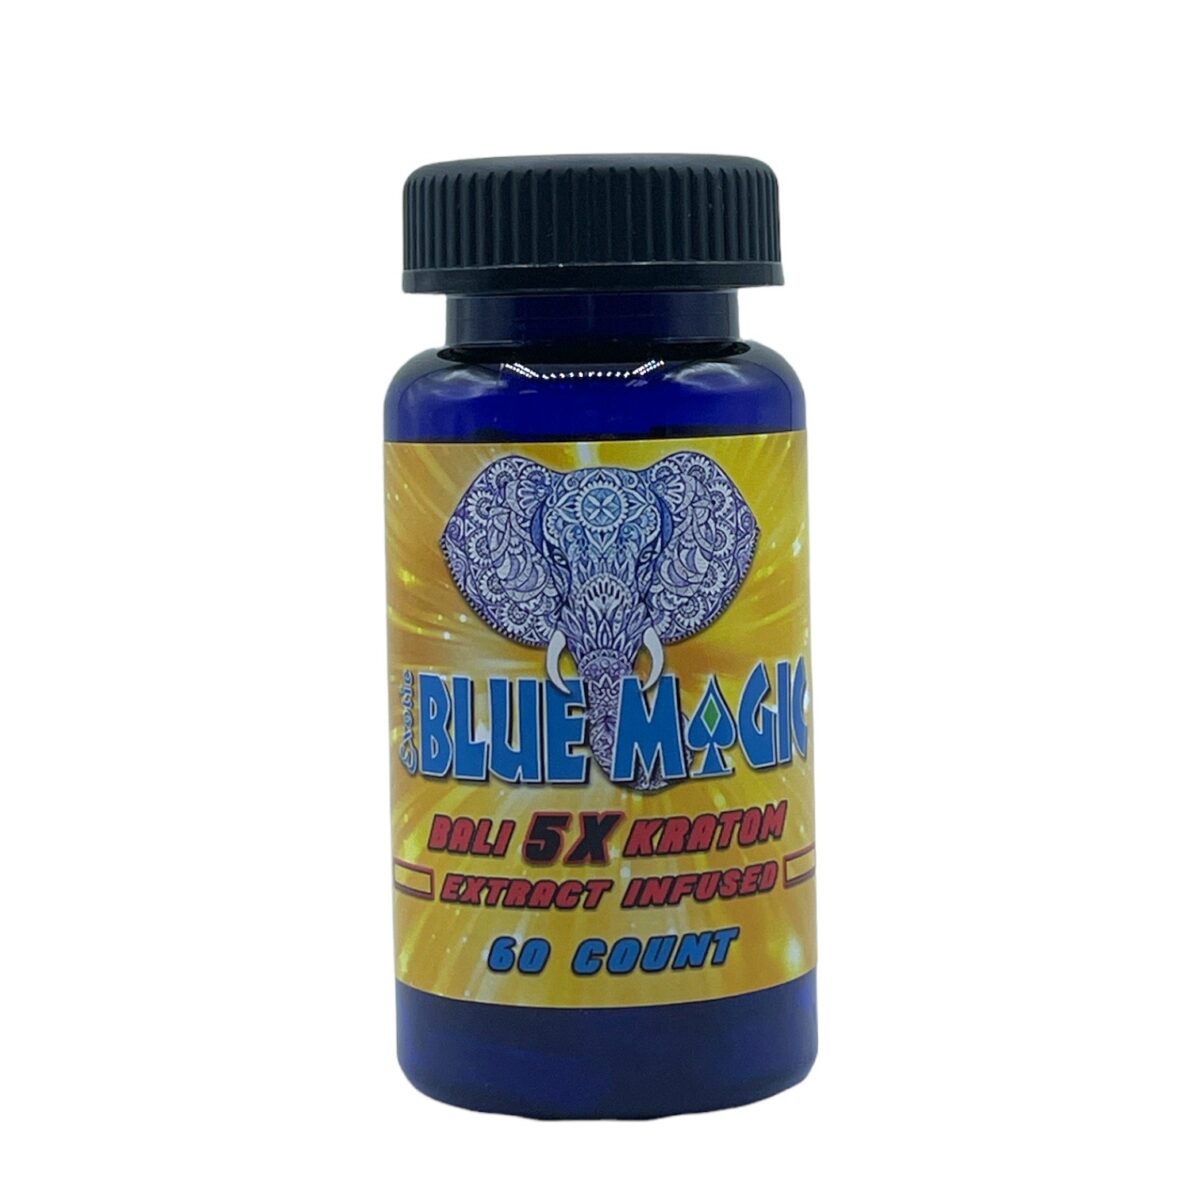 Blue Magic Kratom Bali 5X Capsule – 60 count